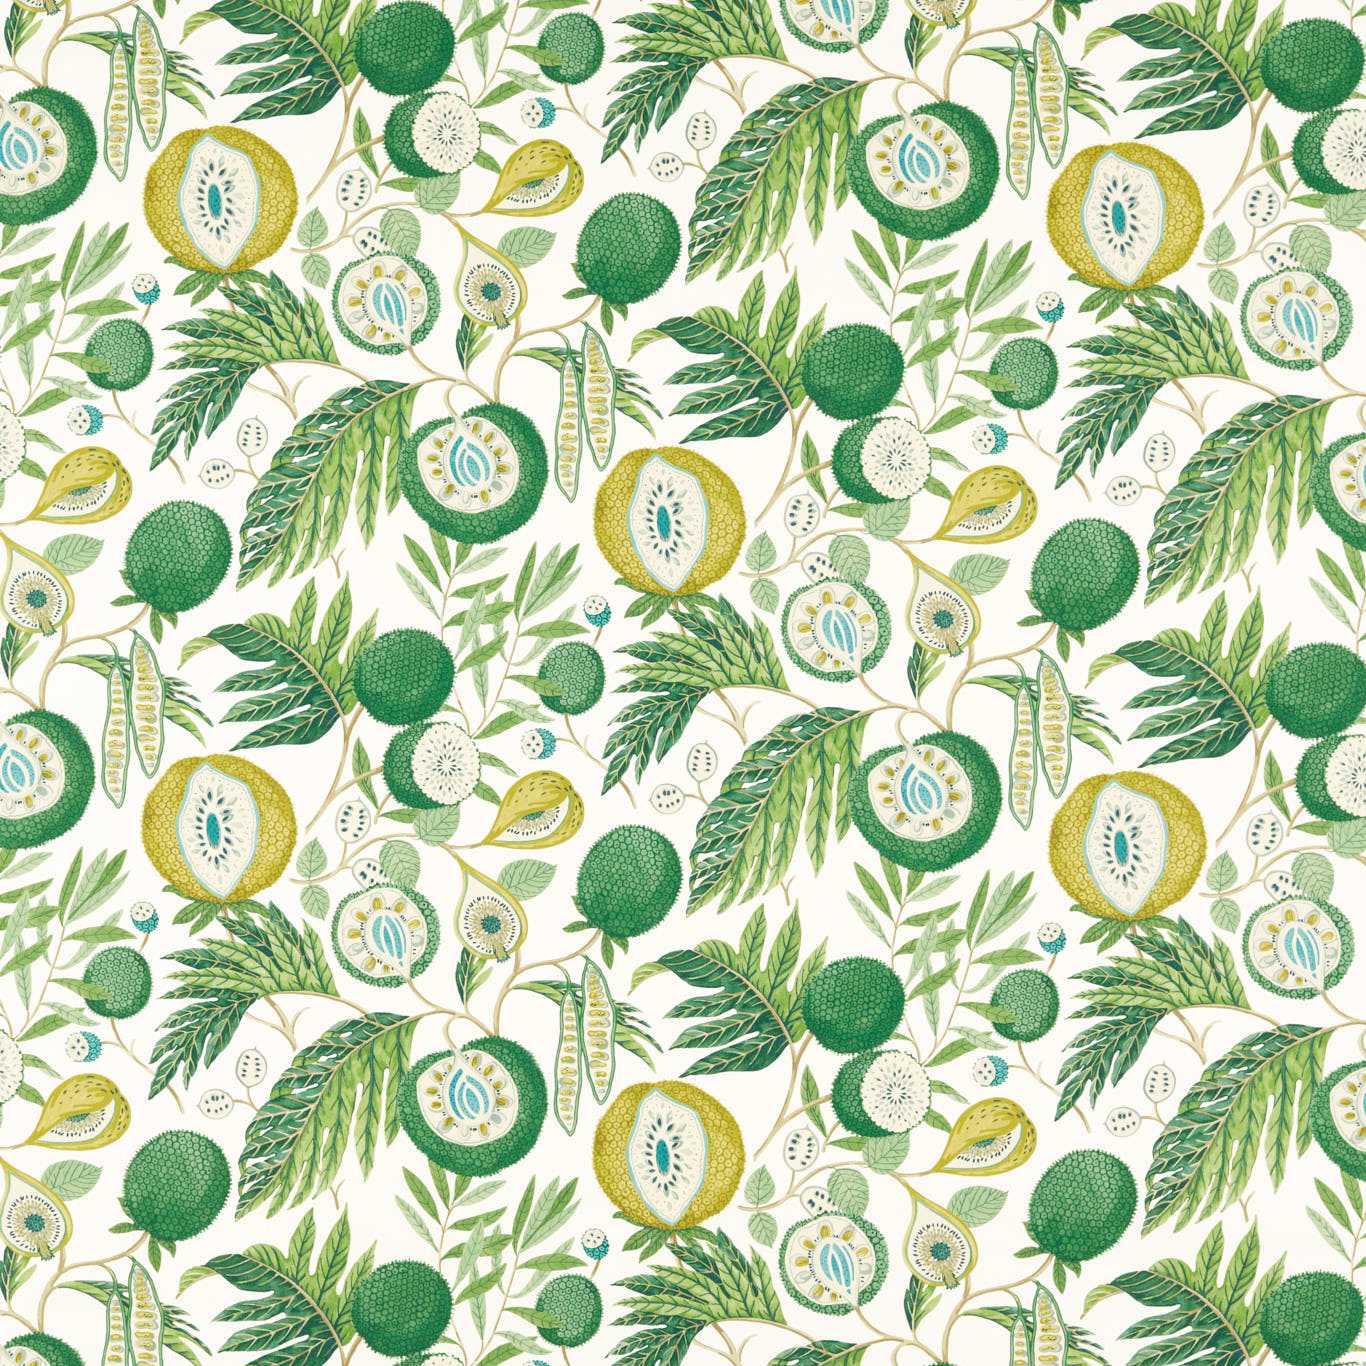 Jackfruit Botanical Green Fabric by SAN